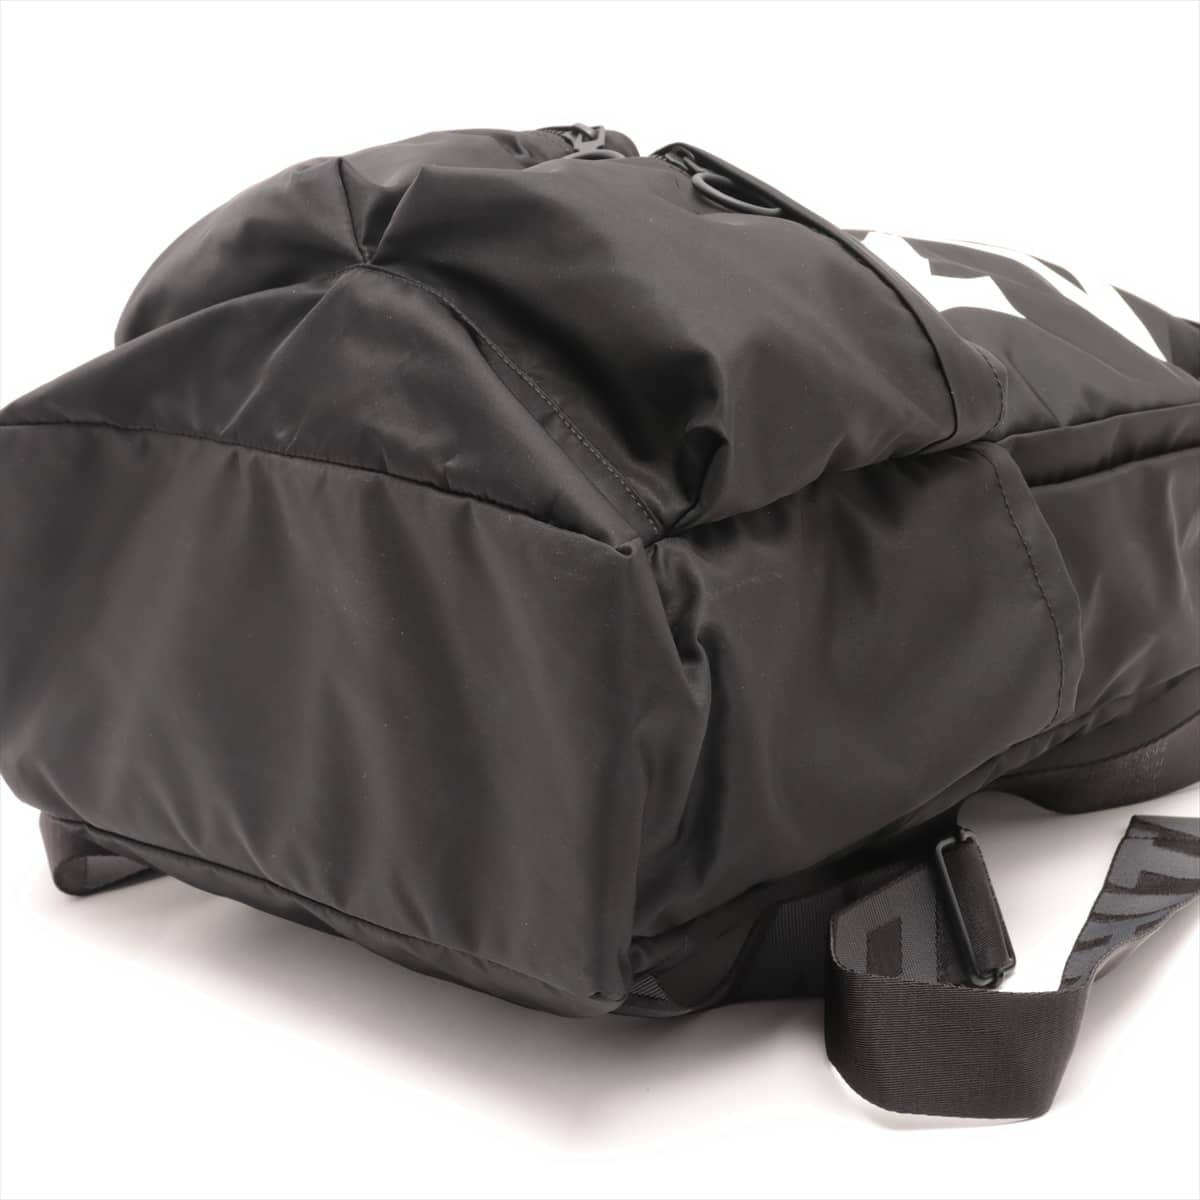 Off-White Nylon Backpack Black